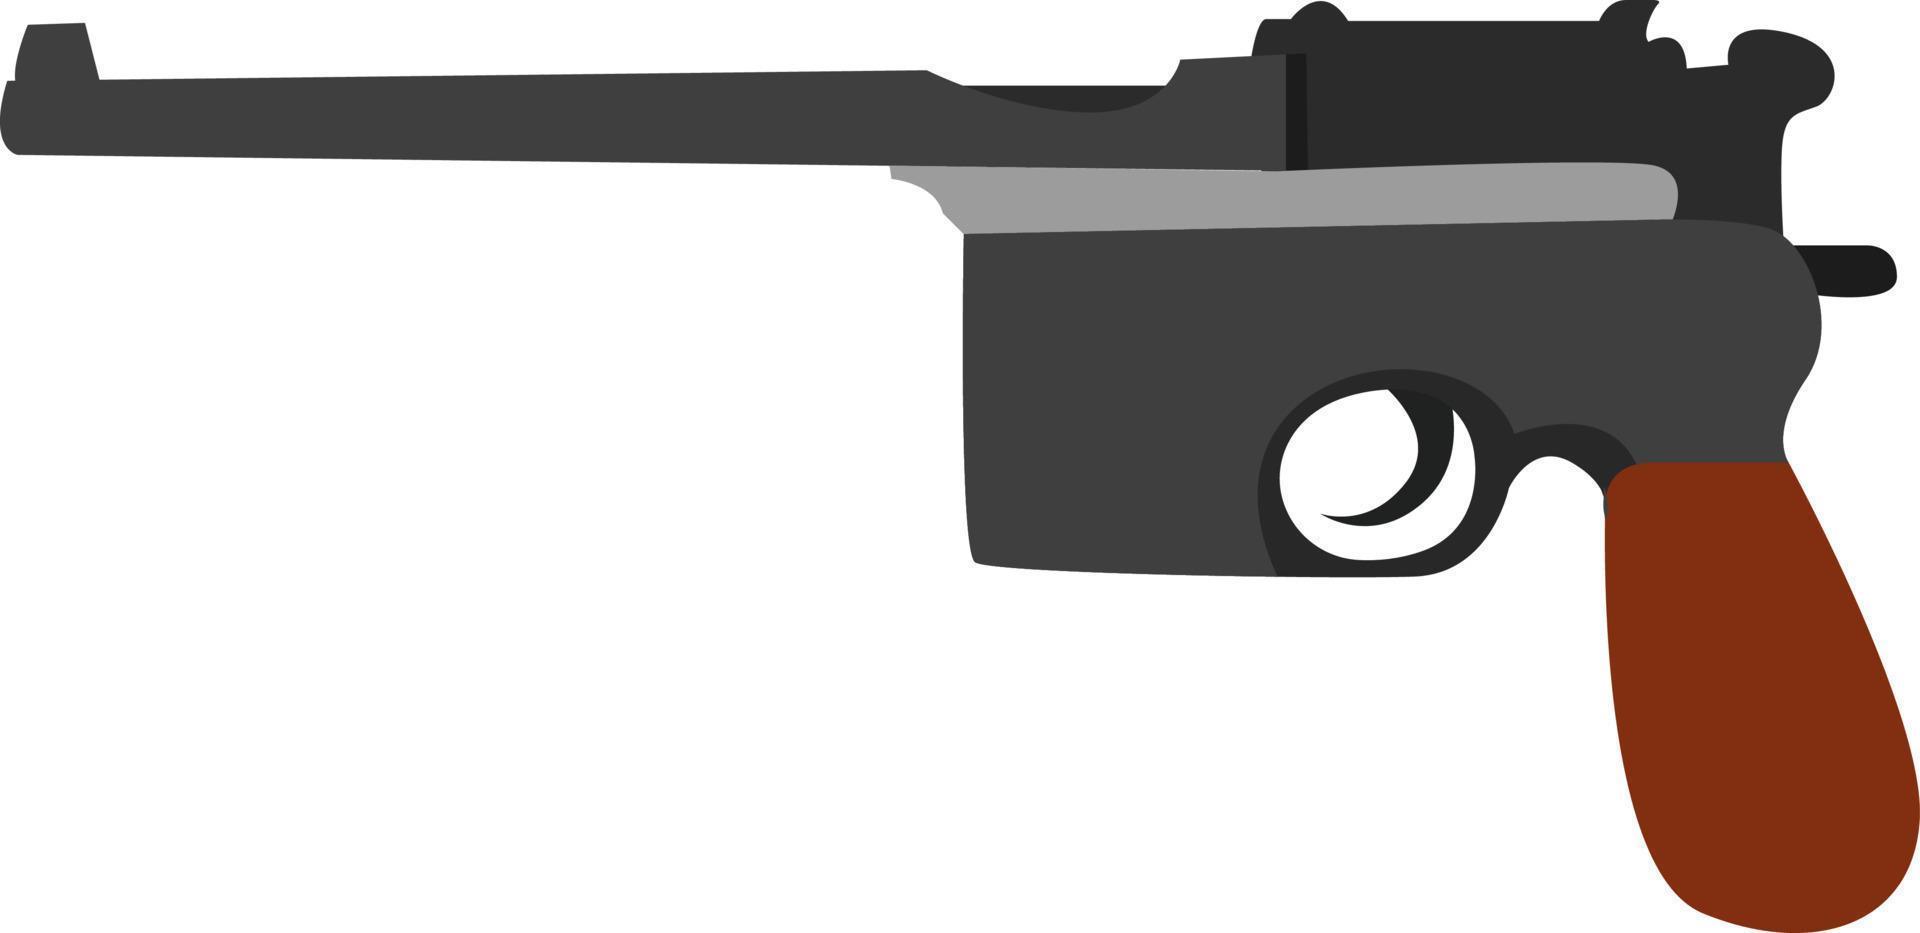 Mauser gun, illustration, vector on white background.